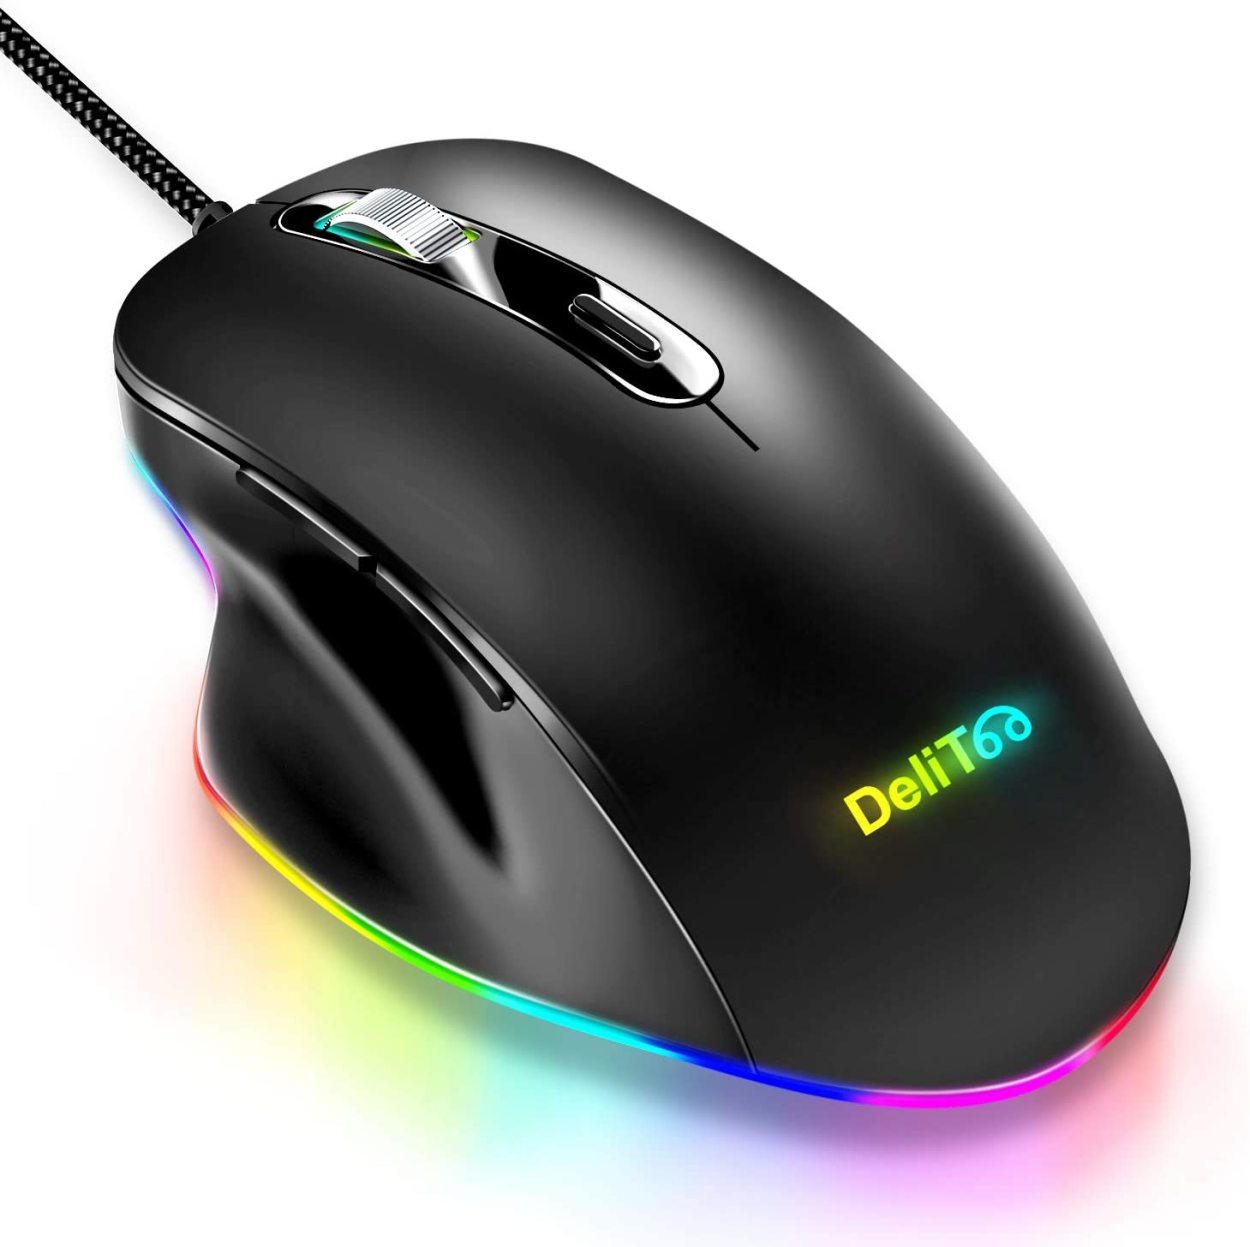 マウス ゲーミングマウス usb 有線マウス 光学式 高精度 4段階DPI切替 6ボタン LEDバックライト ゲームマウス ps4 FPS PUBG  荒野行動 PC 静音